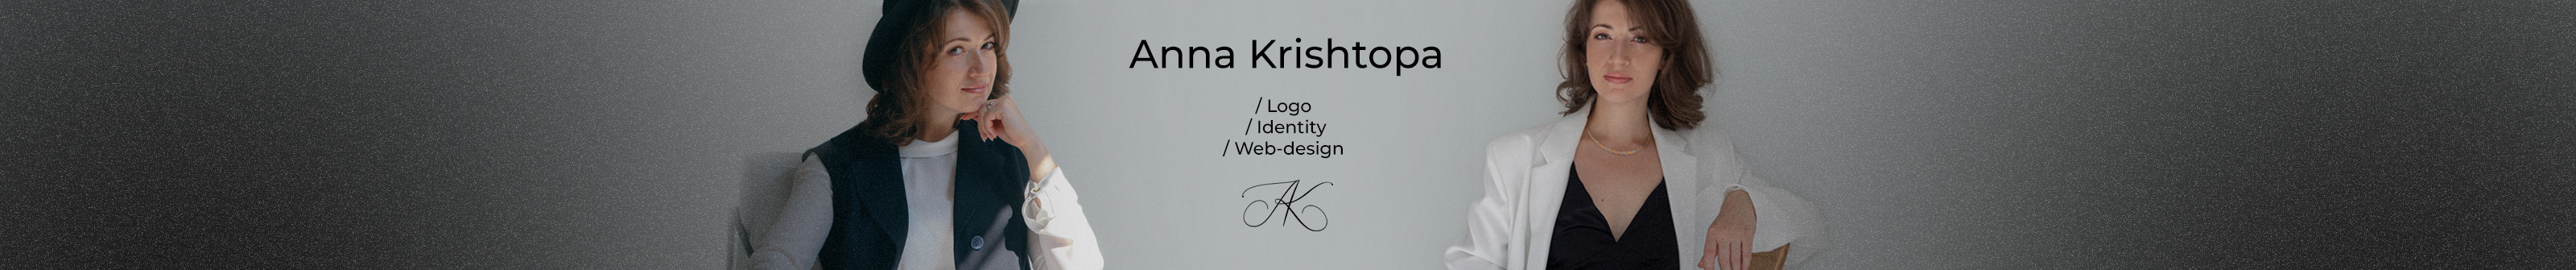 Anna Krishtopa's profile banner